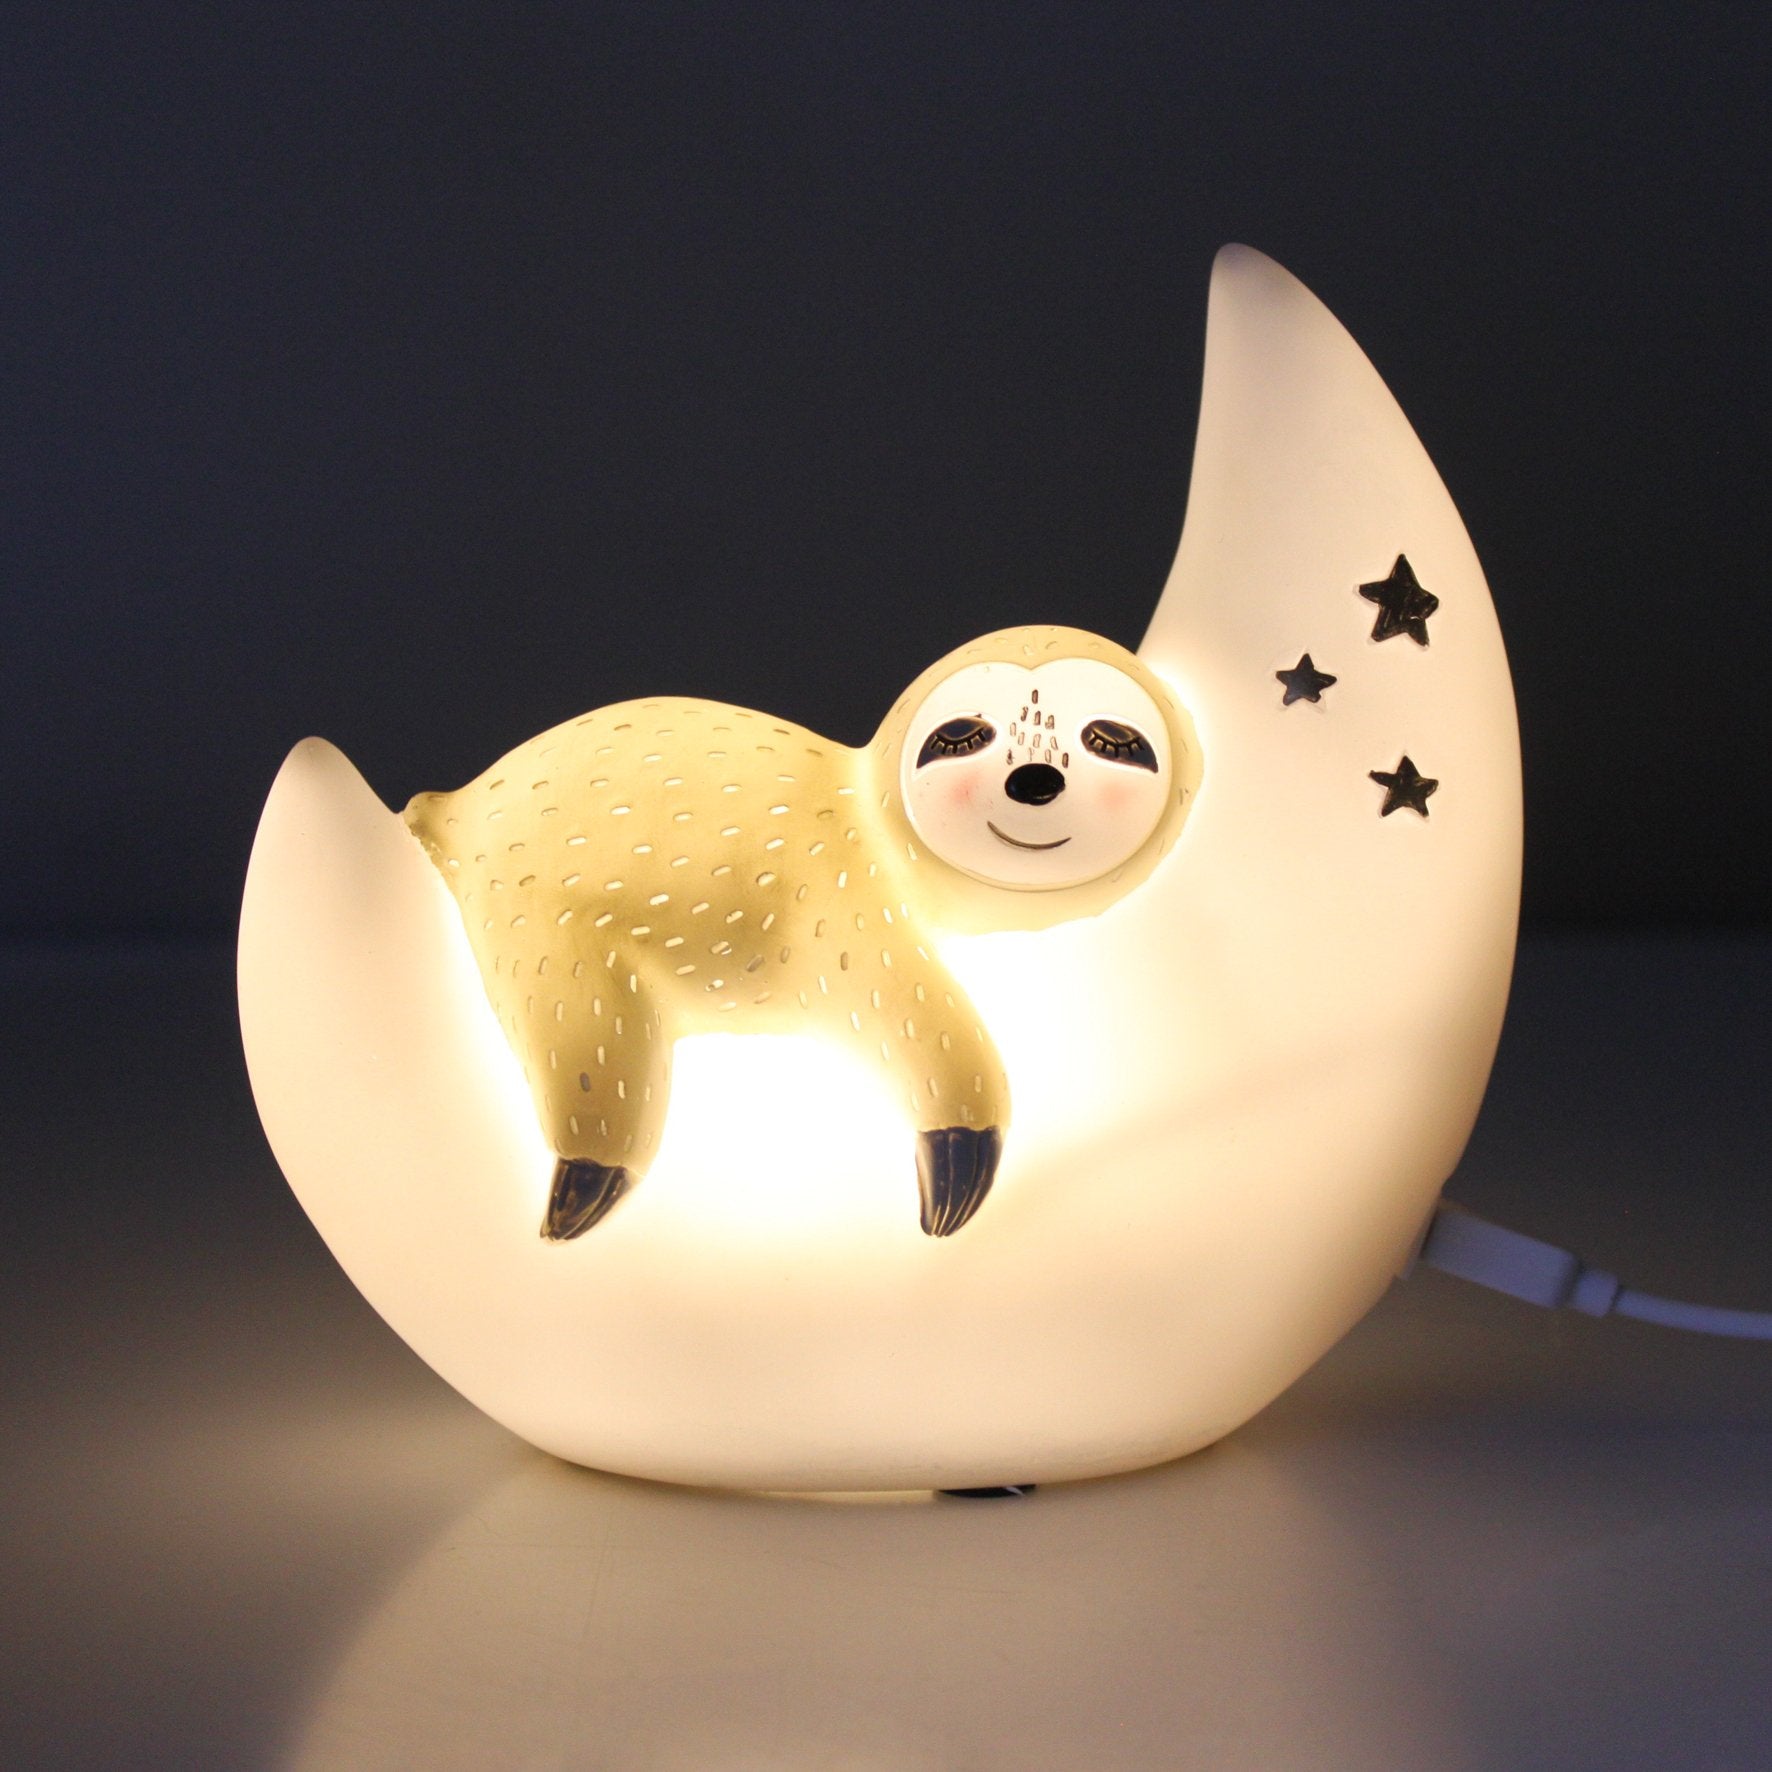 Mini Led Lamp Over The Moon Sloth